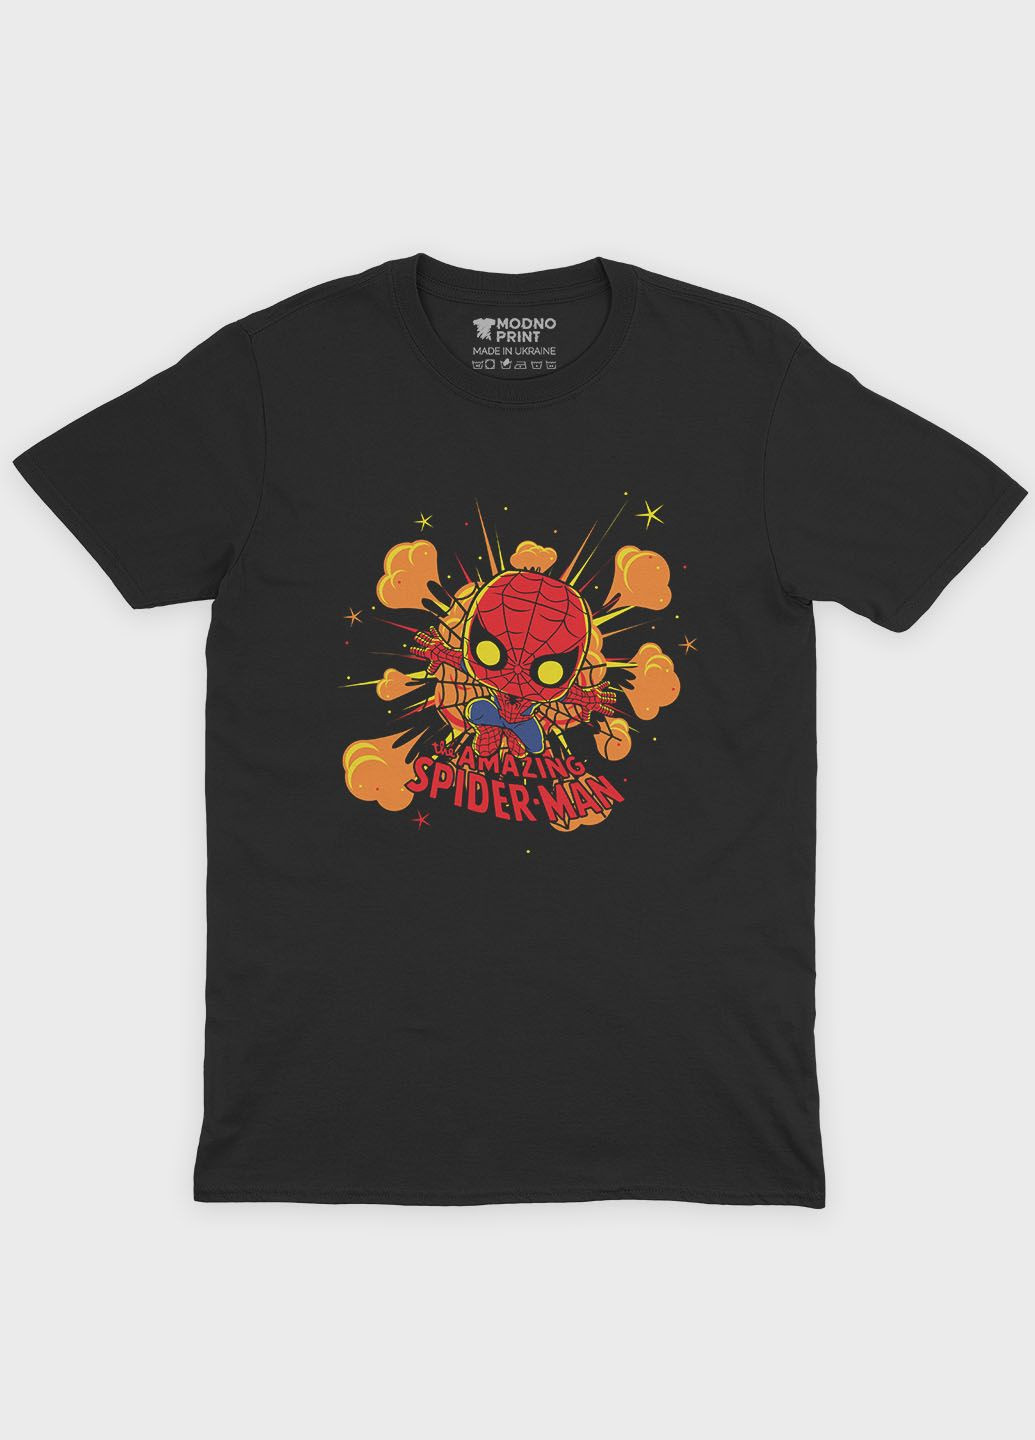 Чорна демісезонна футболка для хлопчика з принтом супергероя - людина-павук (ts001-1-bl-006-014-056-b) Modno